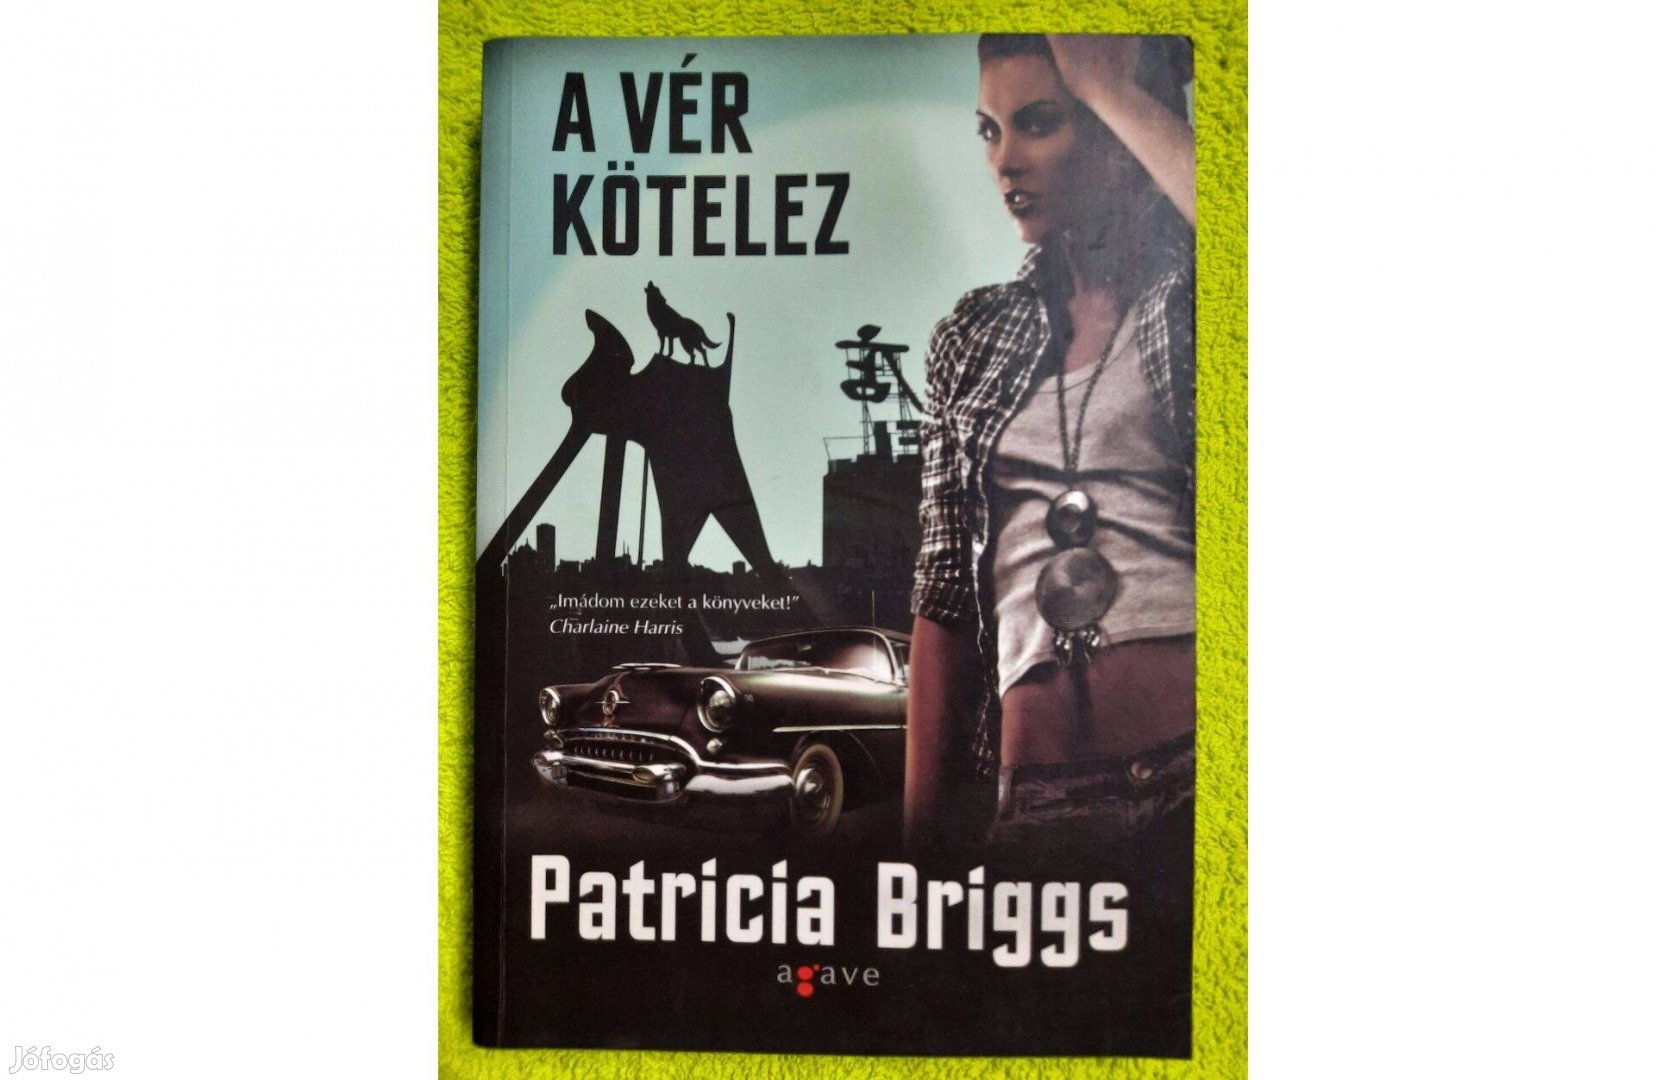 Patricia Briggs: A vér kötelez